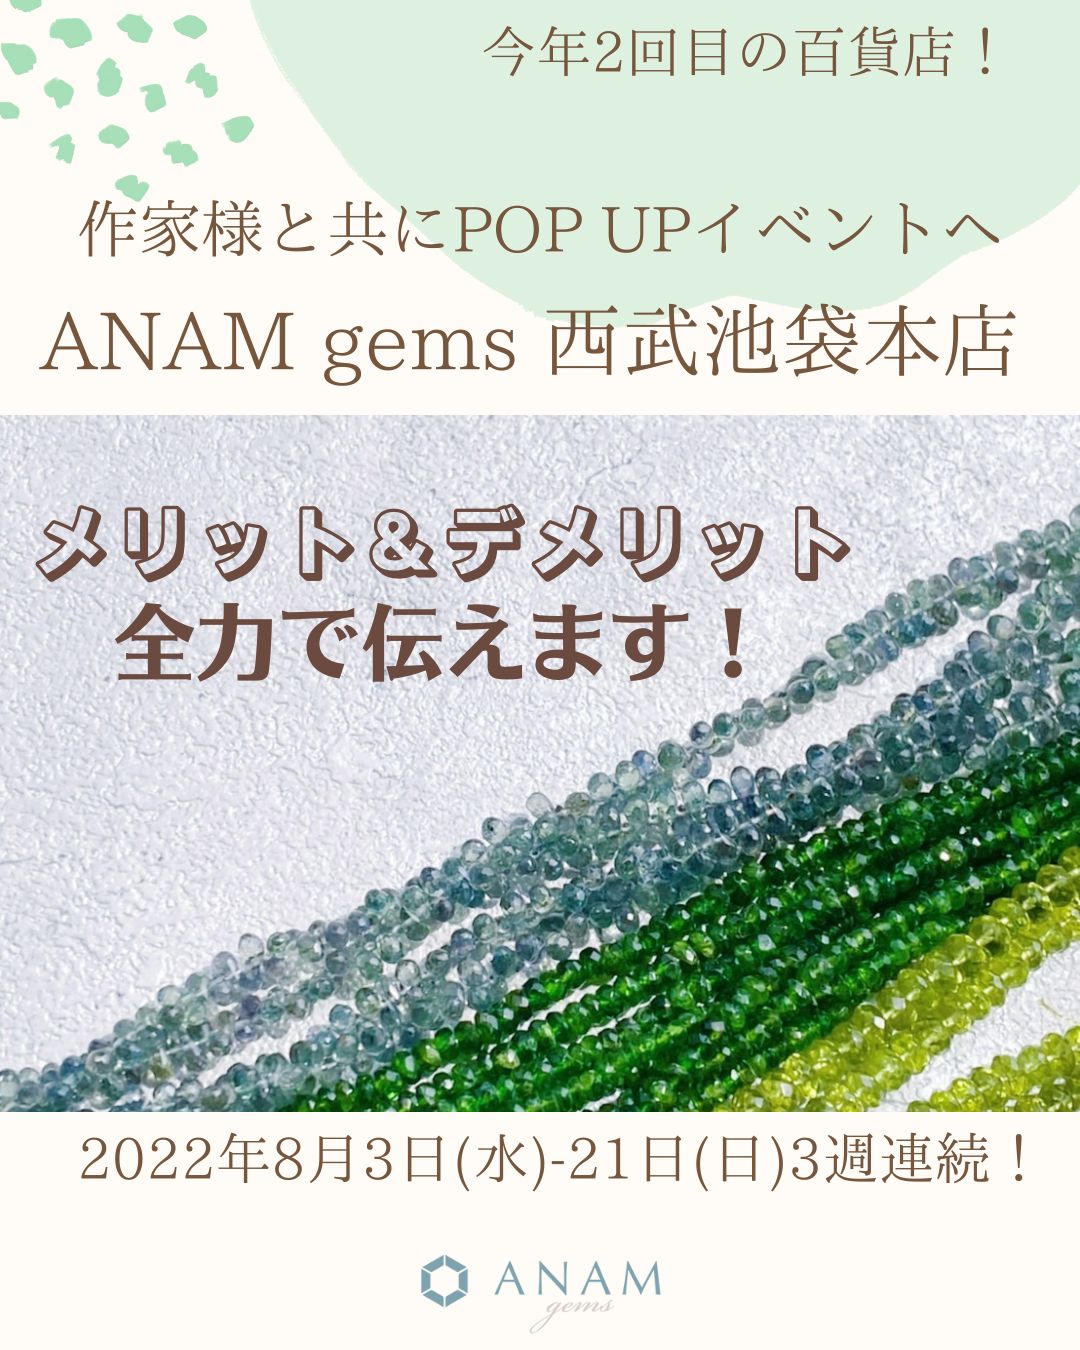 ANAM gems POP UPの 委託企画参加のメリット＆デメリットを全力でお伝え！